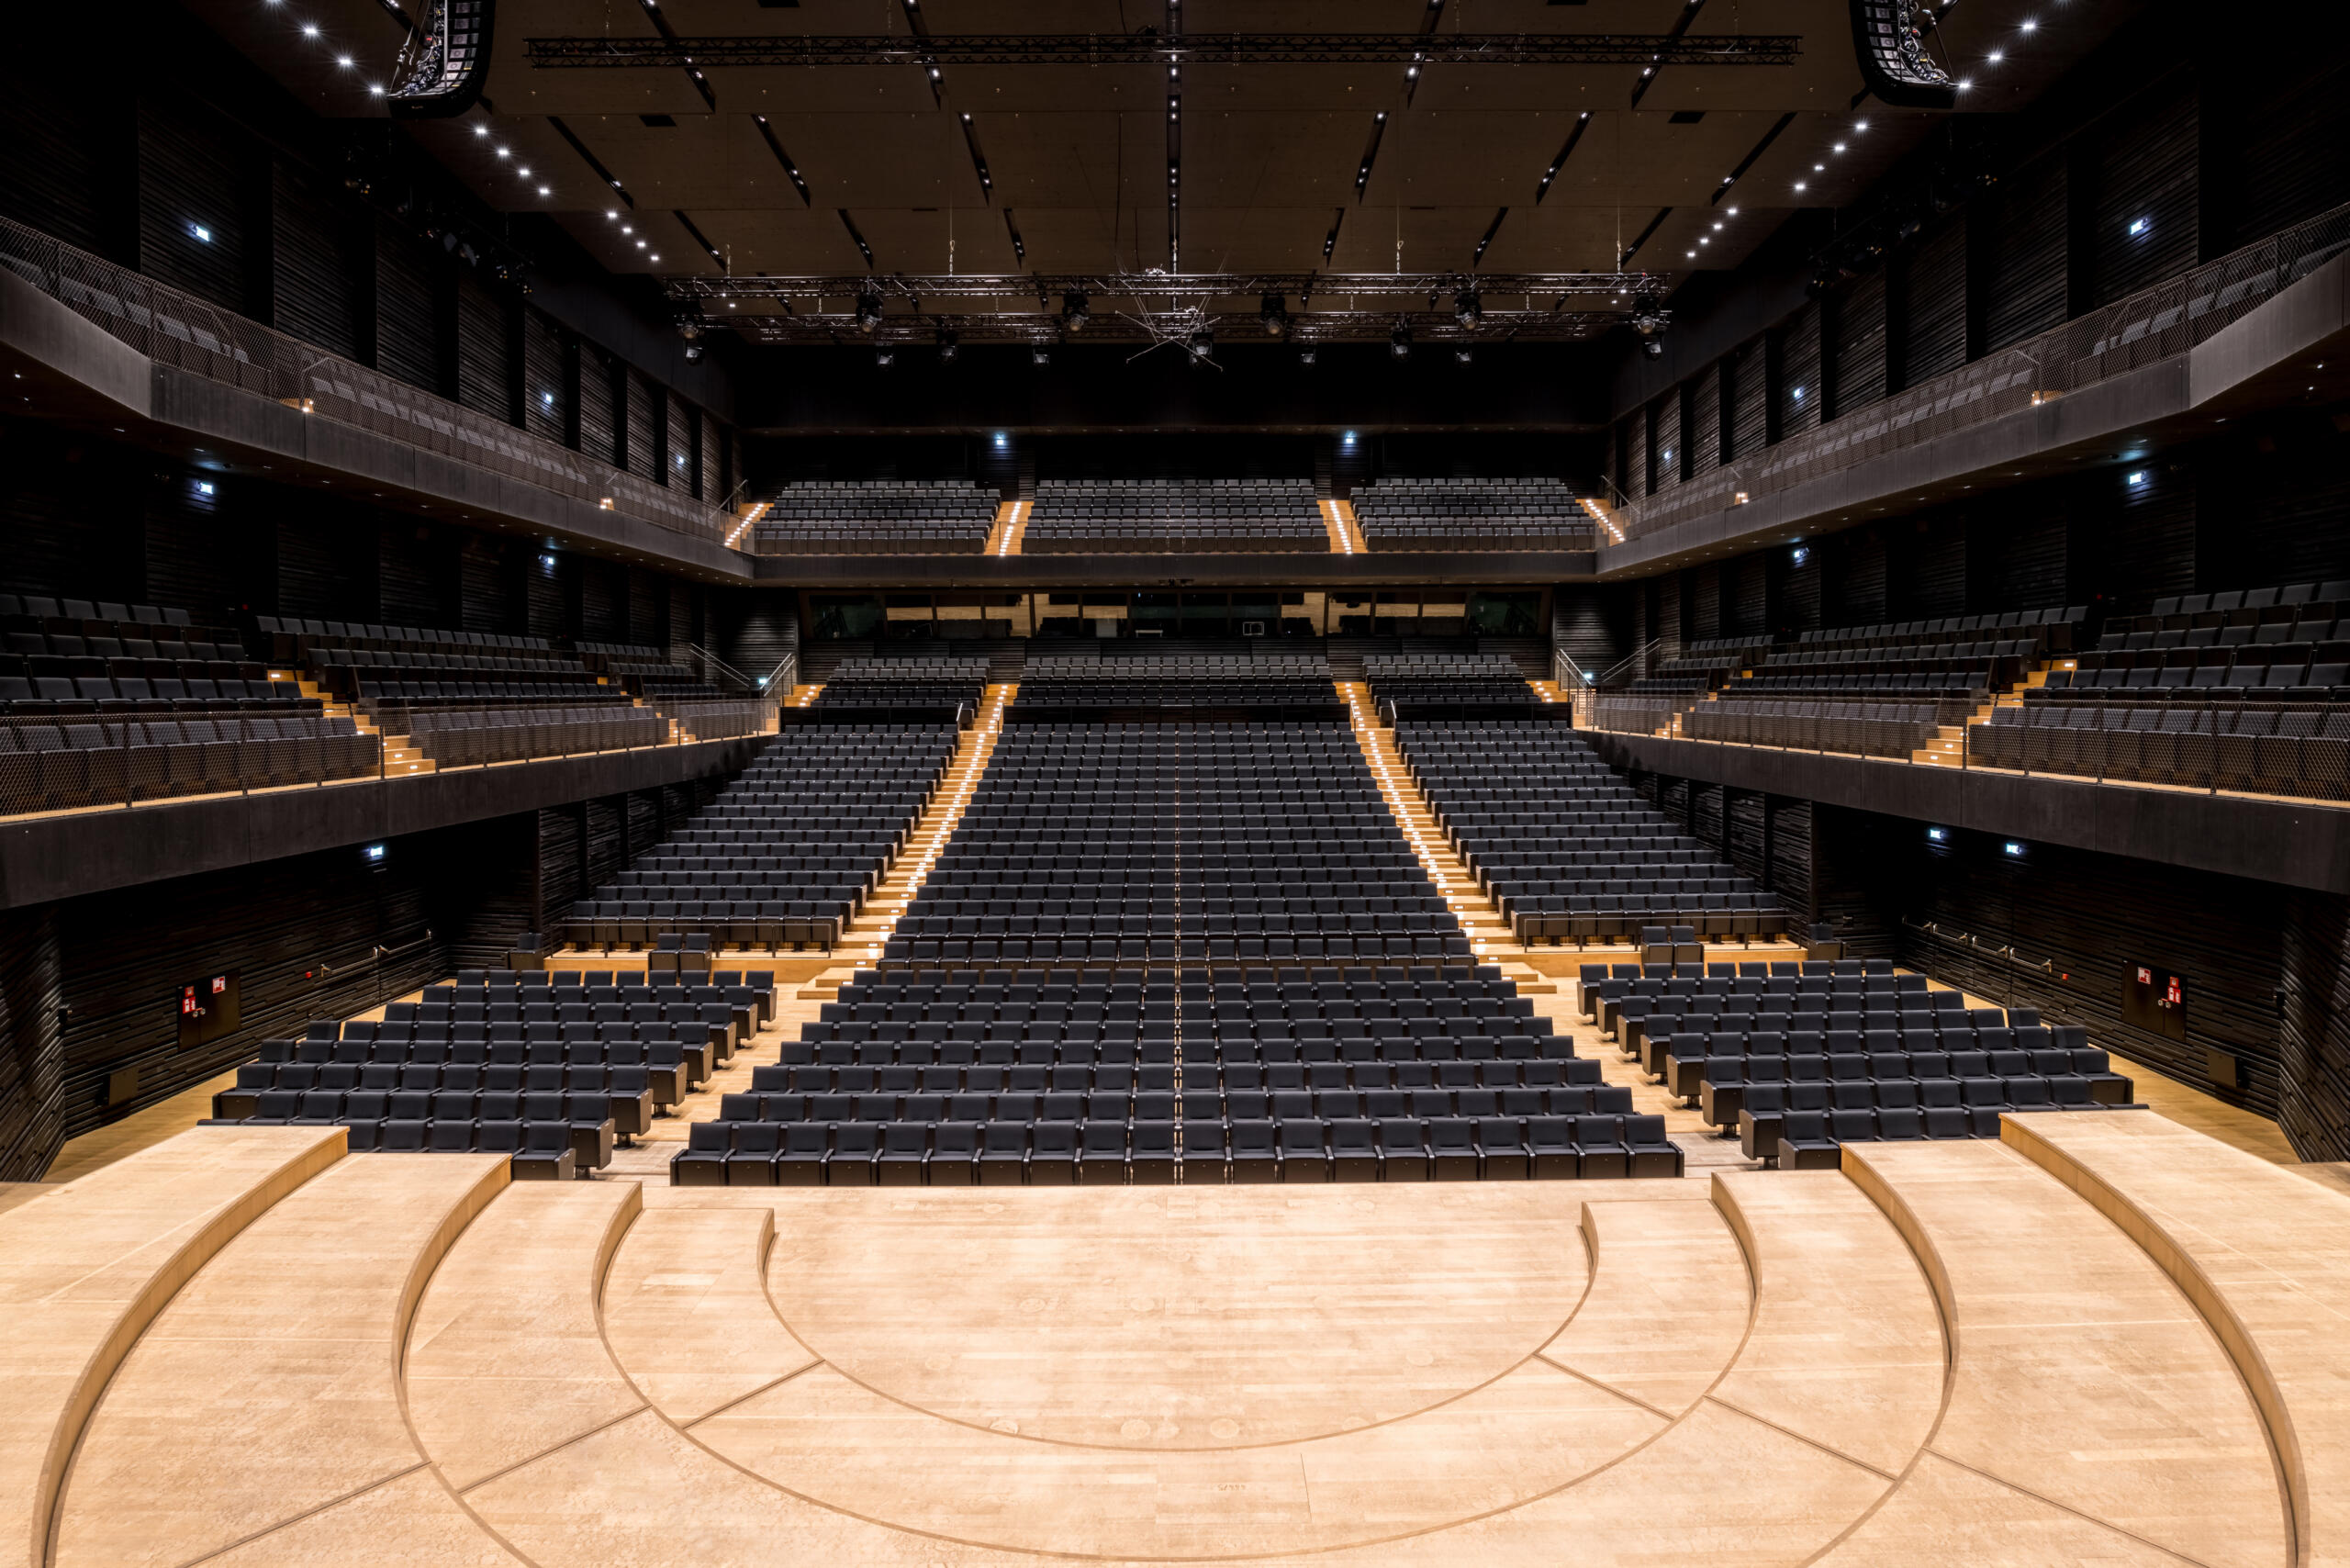 Blick in den dunklen, symmetrischen Zuschauerraum des Konzertsaals mit Parkett, Balkonen und Rängen, von der hellen Bühne aus.